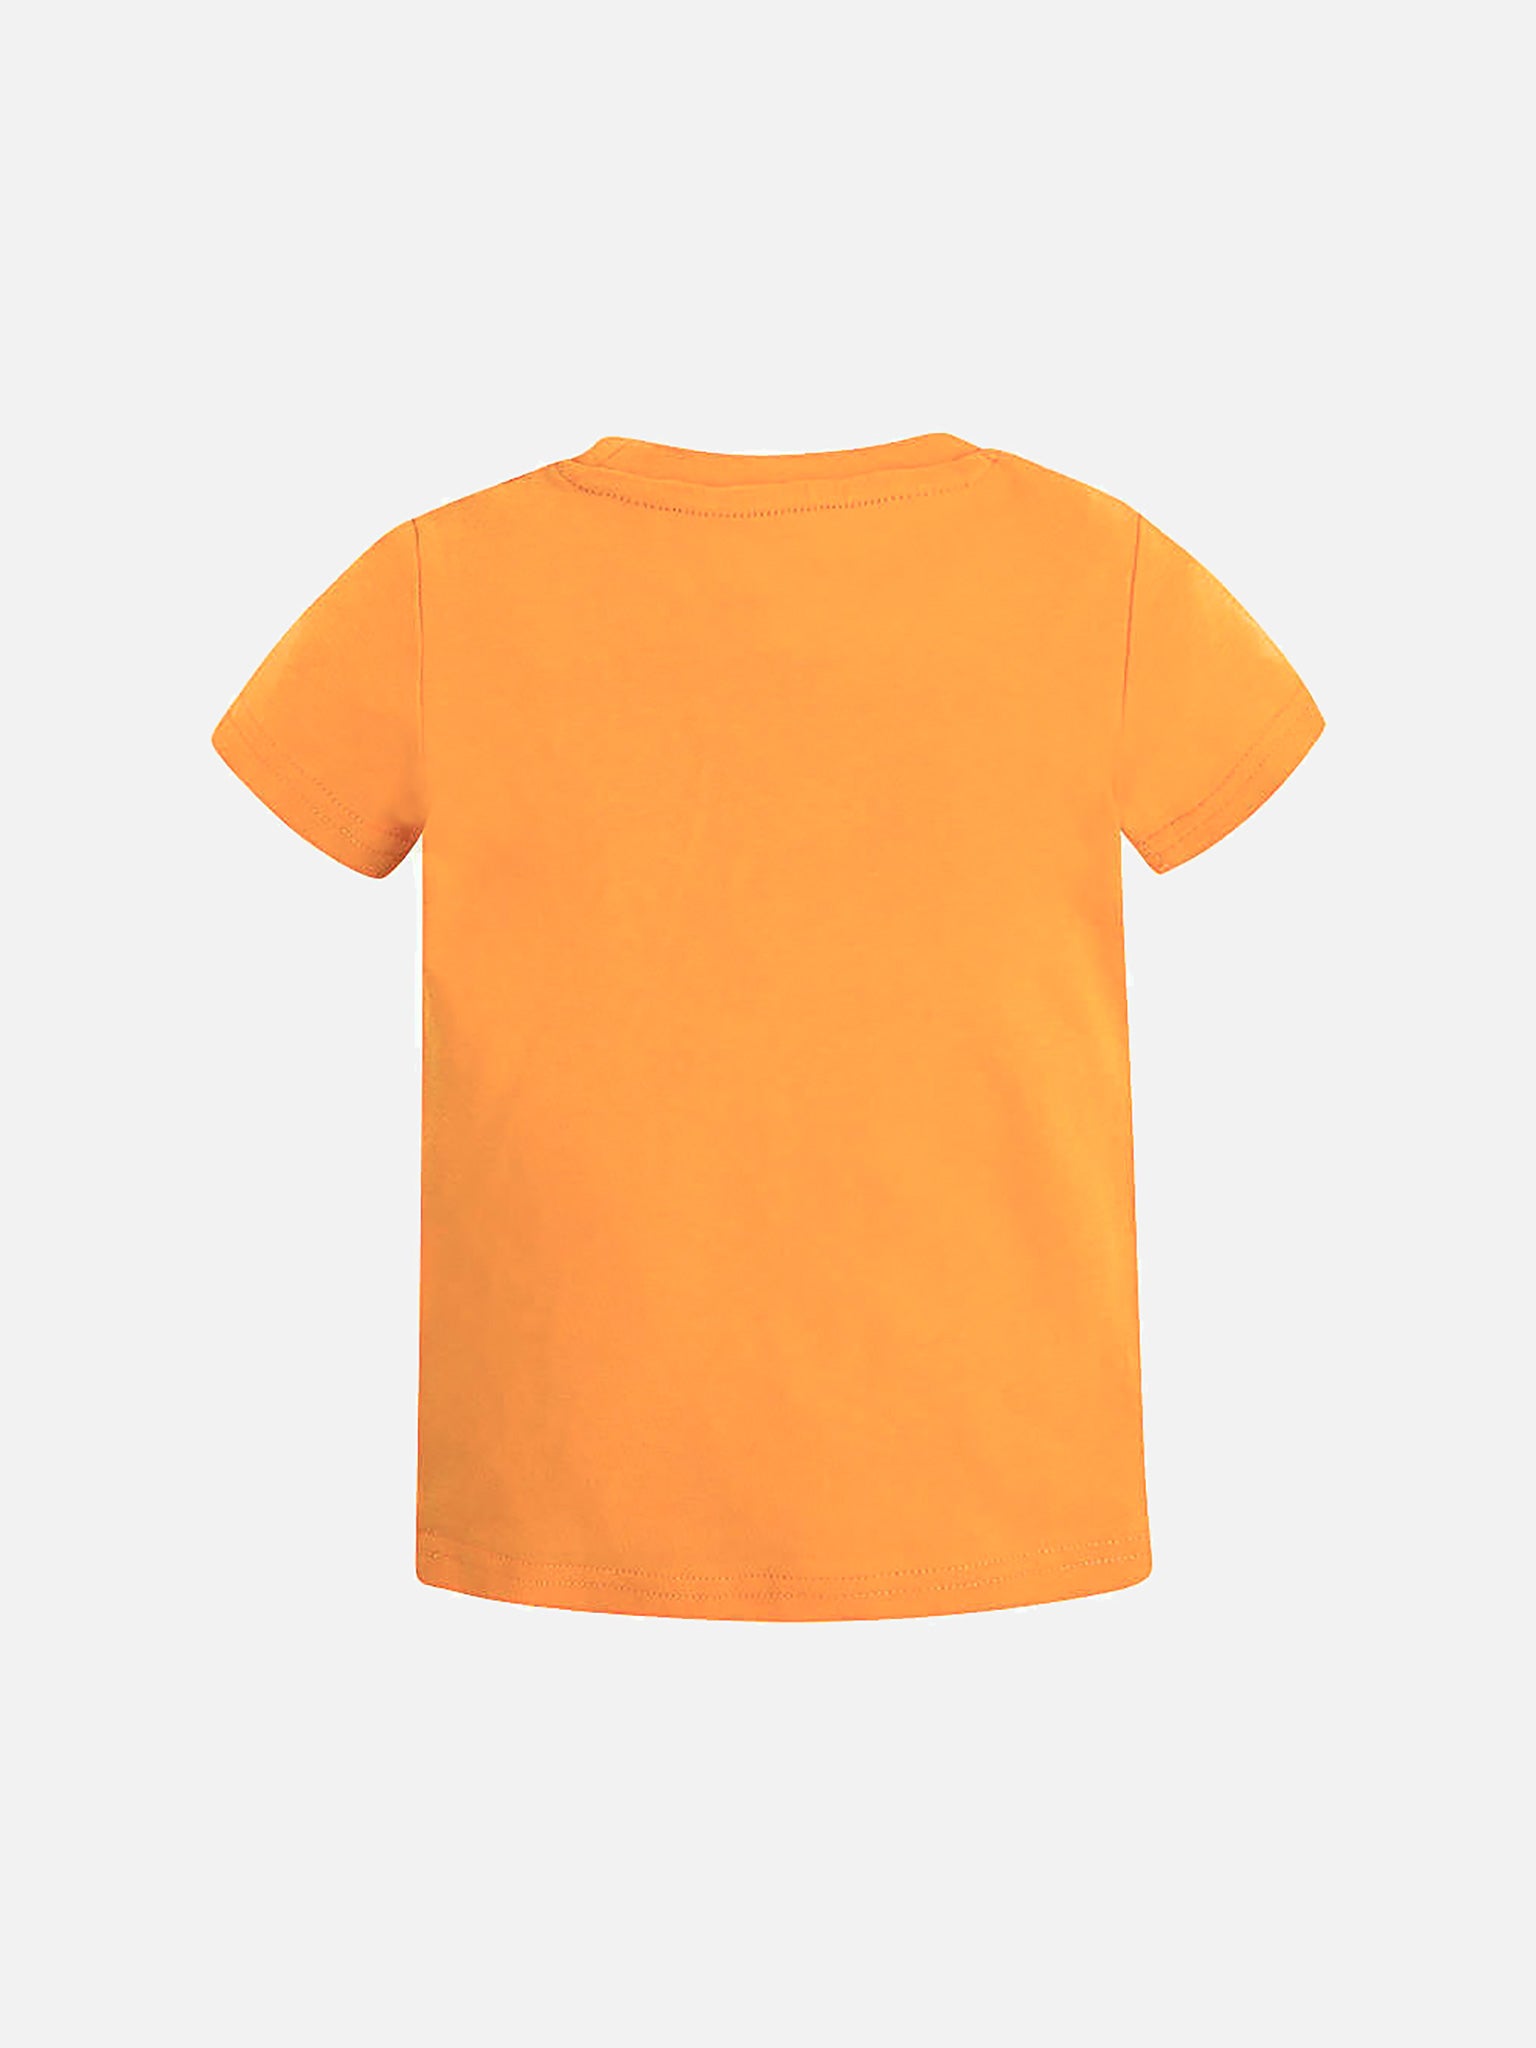 Παιδική μπλούζα basic με τύπωμα 28-00170-070 | 28-00170-070